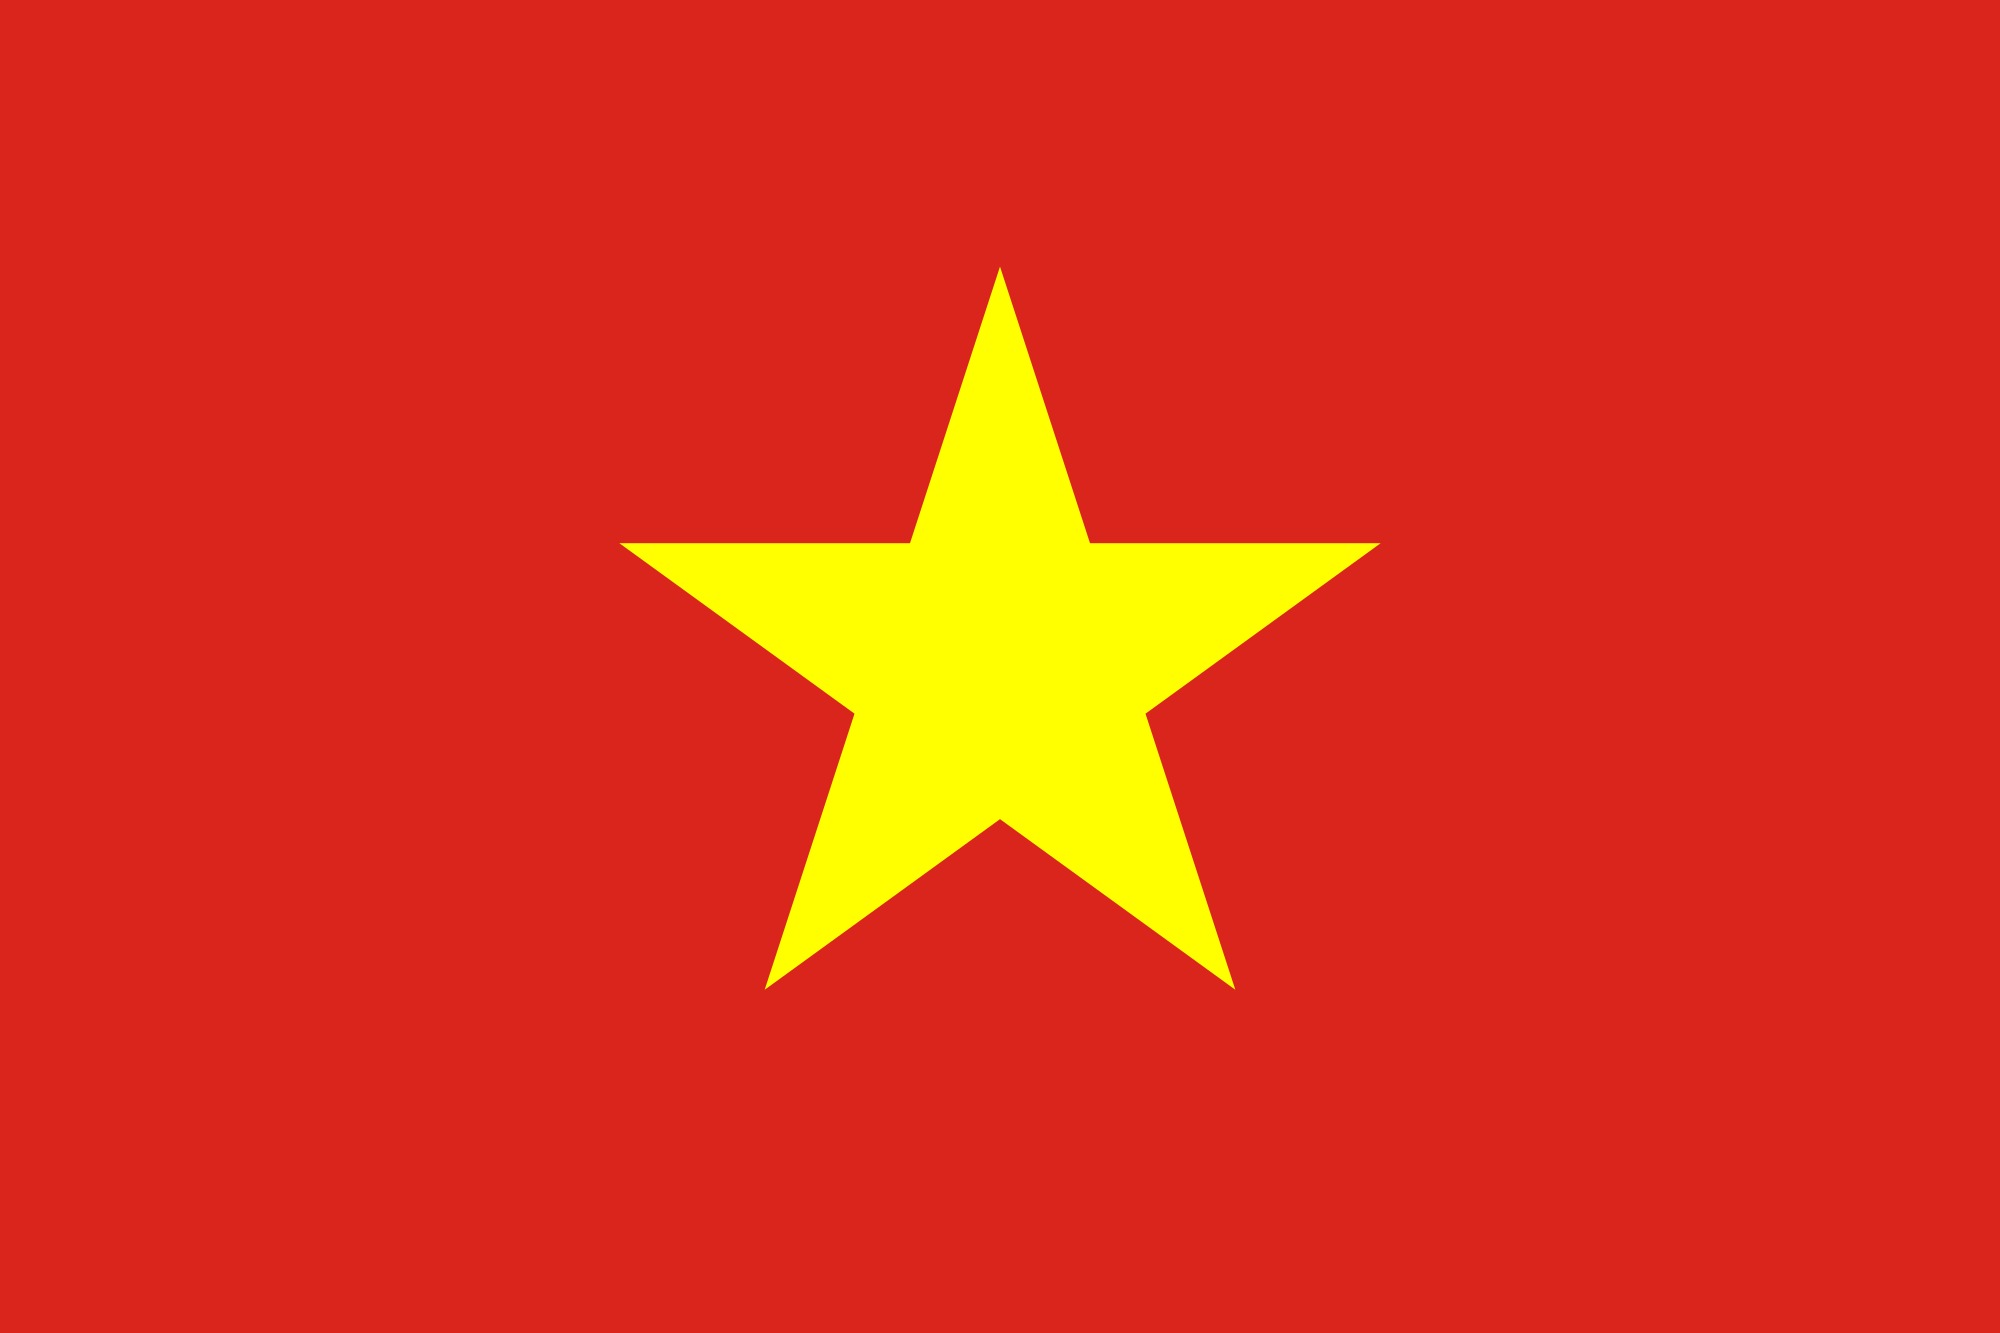 Ý nghĩa tượng trưng thể hiện trên lá quốc kỳ Việt Nam là sự đoàn kết và thống nhất của toàn dân Việt Nam trong công cuộc xây dựng đất nước. Lá cờ ba màu đỏ-vàng-xanh biểu thị cho sức mạnh, sự giàu có và lòng trung thành của dân tộc Việt Nam. Hãy khám phá hình ảnh quốc kỳ Việt Nam để hiểu thêm về ý nghĩa văn hóa sâu sắc được đưa vào biểu tượng quốc gia này.